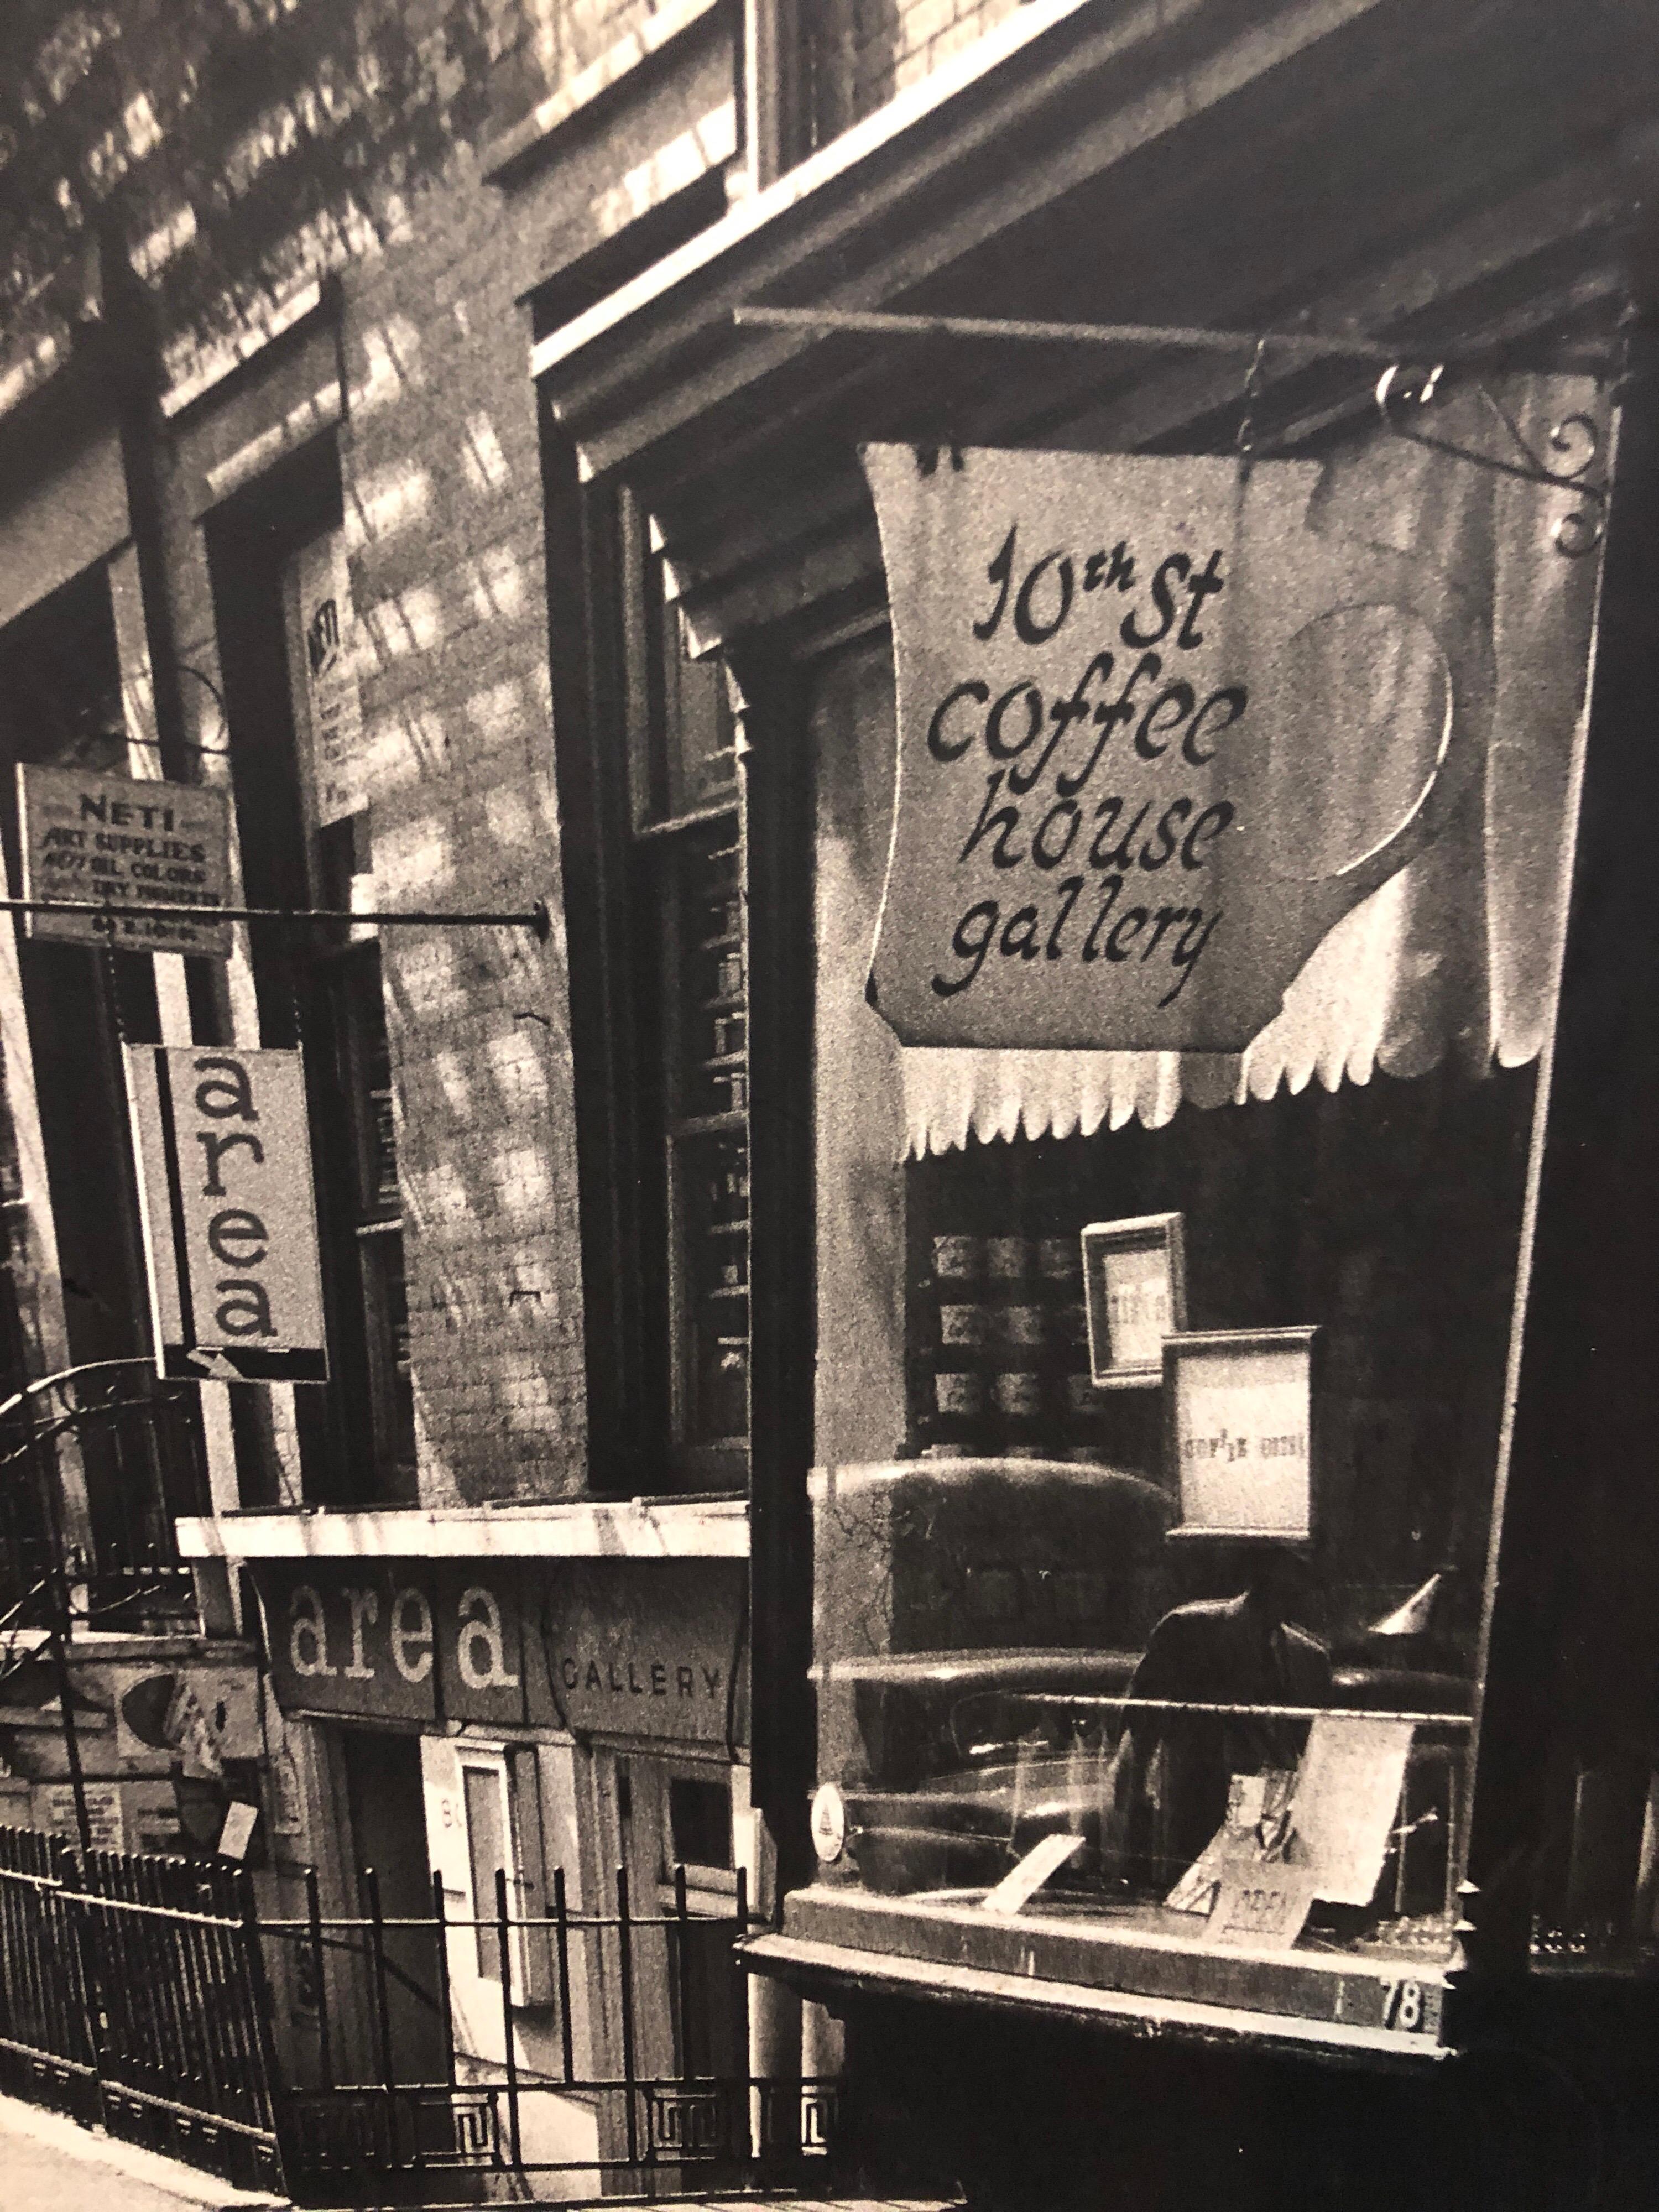 Rare photographie en noir et blanc de la célèbre 10th street coffee house gallery à New York, qui fut le centre de la scène artistique, poétique et musicale dans les années 1960 et 1970, attirant des personnalités comme Andy Warhol, John Chamberlin